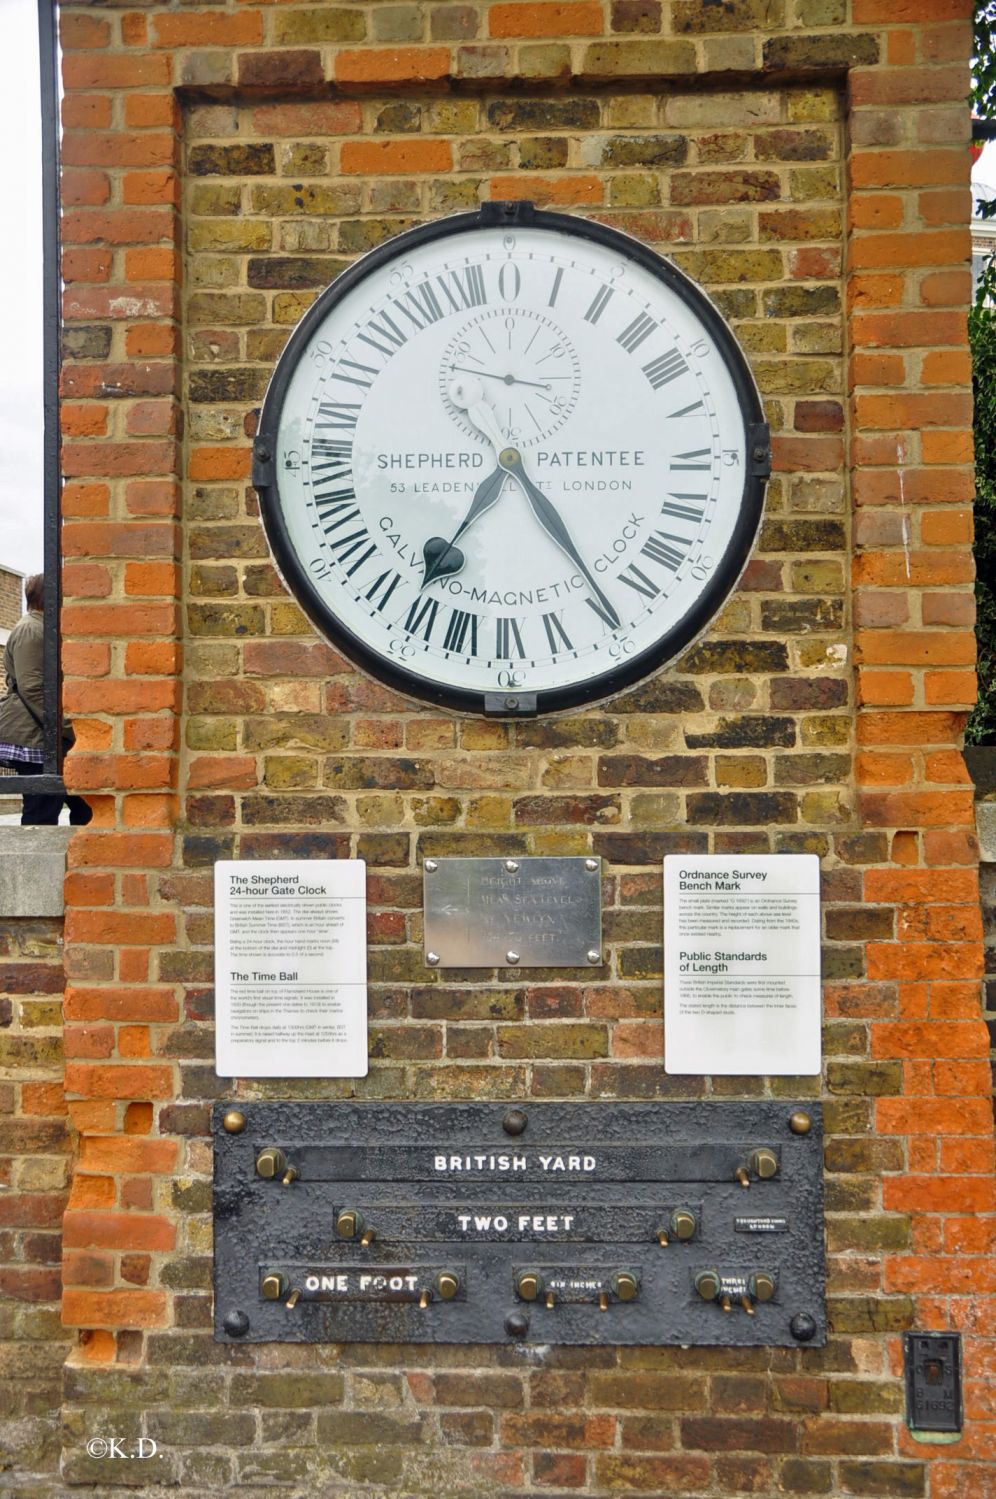 Greenwich-London: 24-Stunden Uhr und Standardmaße